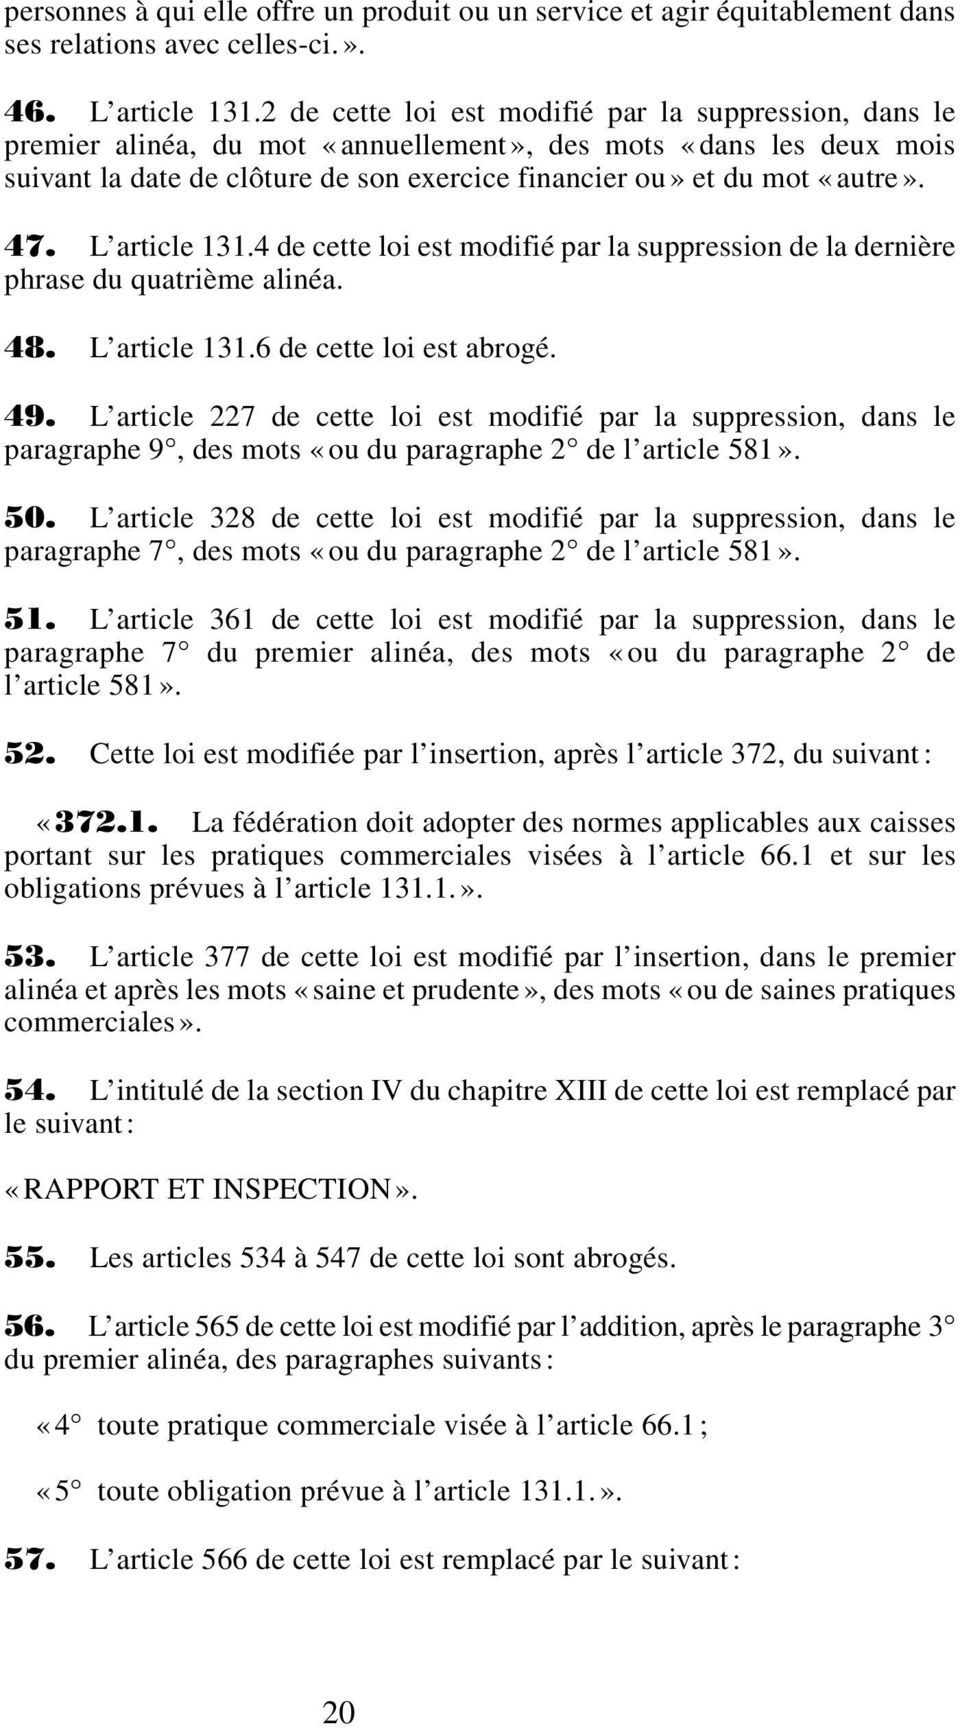 47. L article 131.4 de cette loi est modifié par la suppression de la dernière phrase du quatrième alinéa. 48. L article 131.6 de cette loi est abrogé. 49.